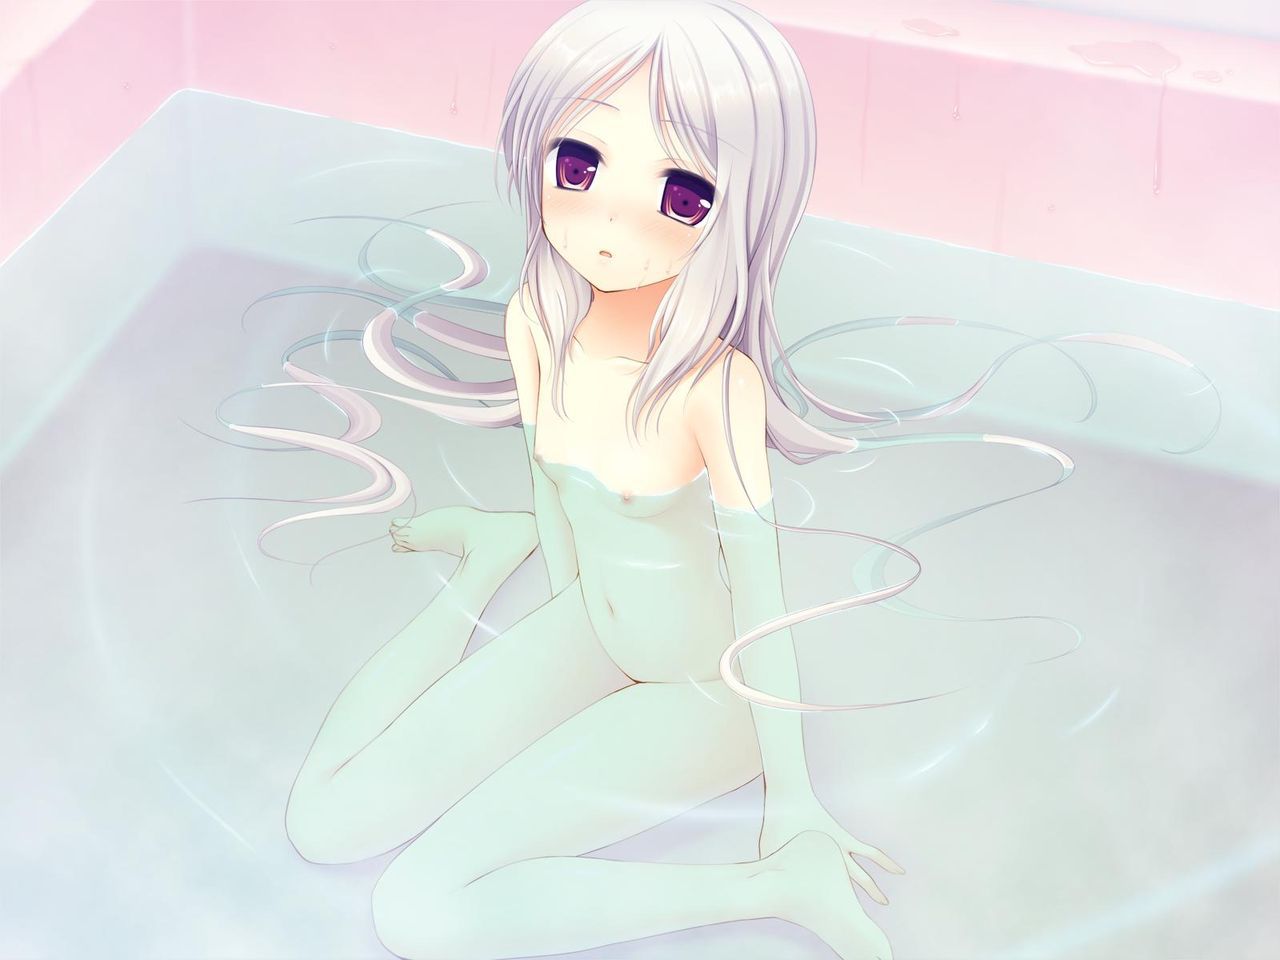 [2次] have been chilly since taking a bath together warm you want to get it pretty second erotic images [bath] 18